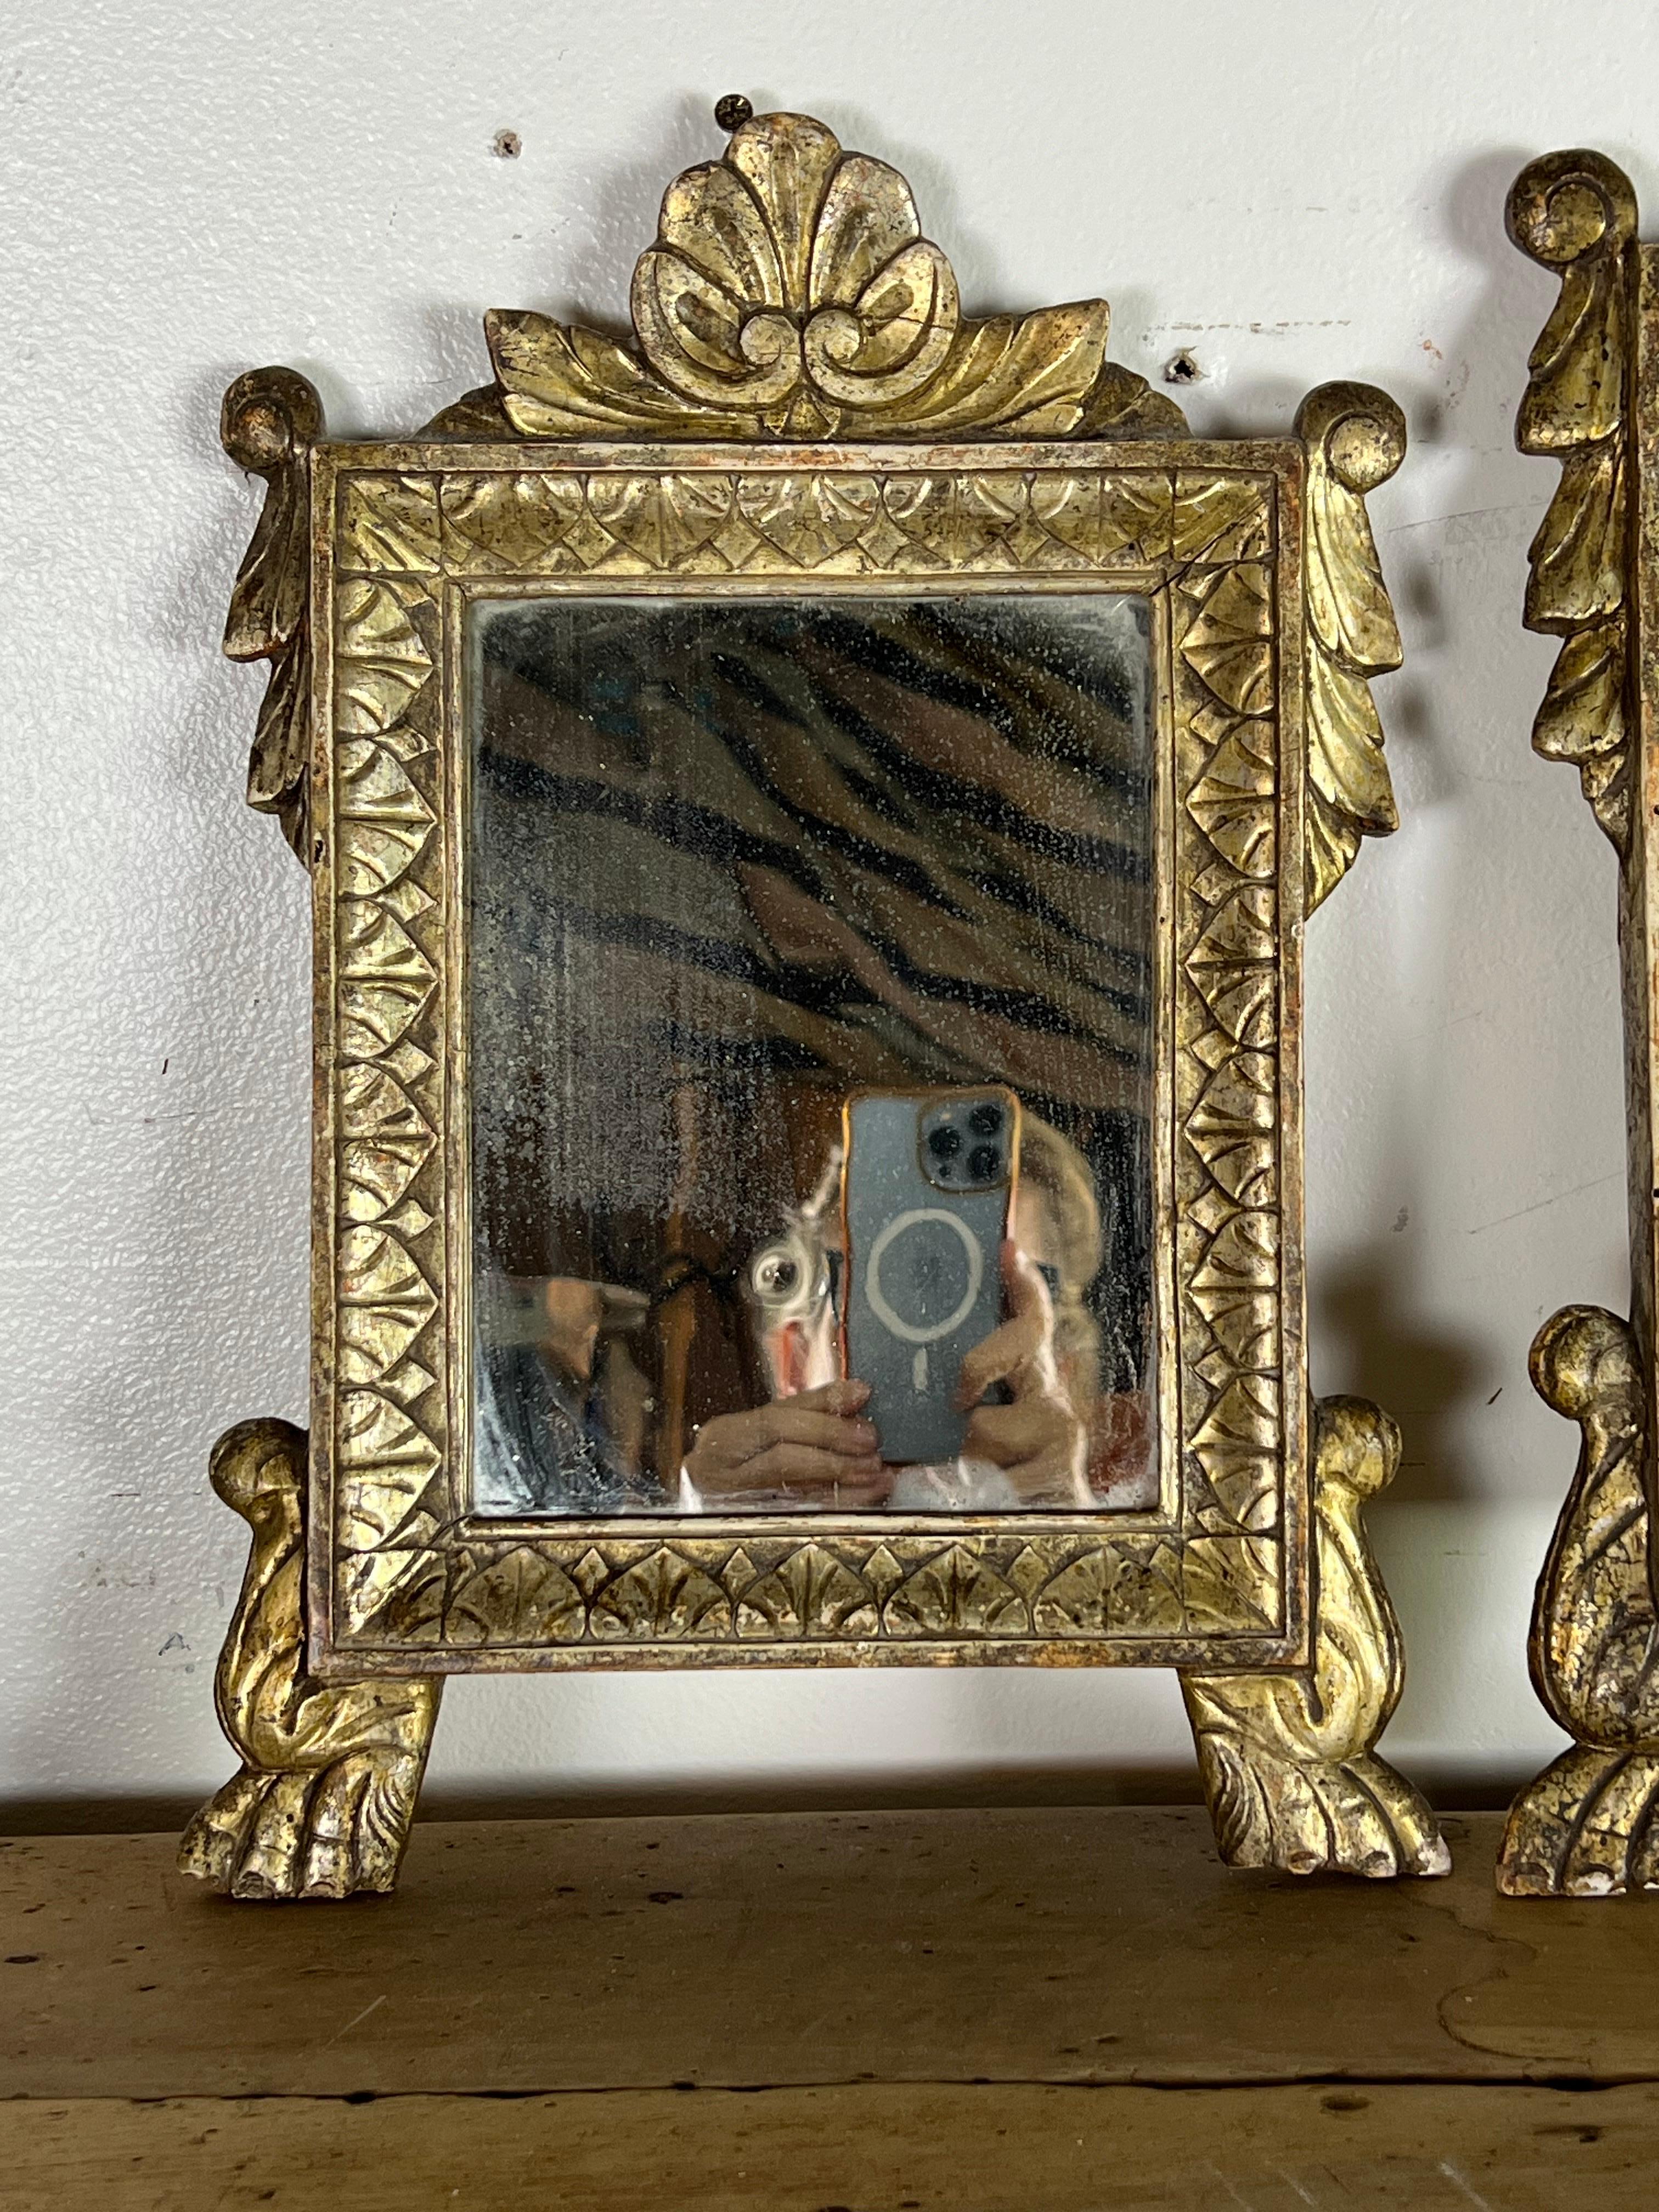 Ensemble de trois miroirs baroques italiens sculptés.  La représentation de coquillages et de détails en forme d'œuf et de fléchette ajoute à la beauté ornementale de ces miroirs.  Les pieds en forme de pattes apportent une touche royale, tandis que